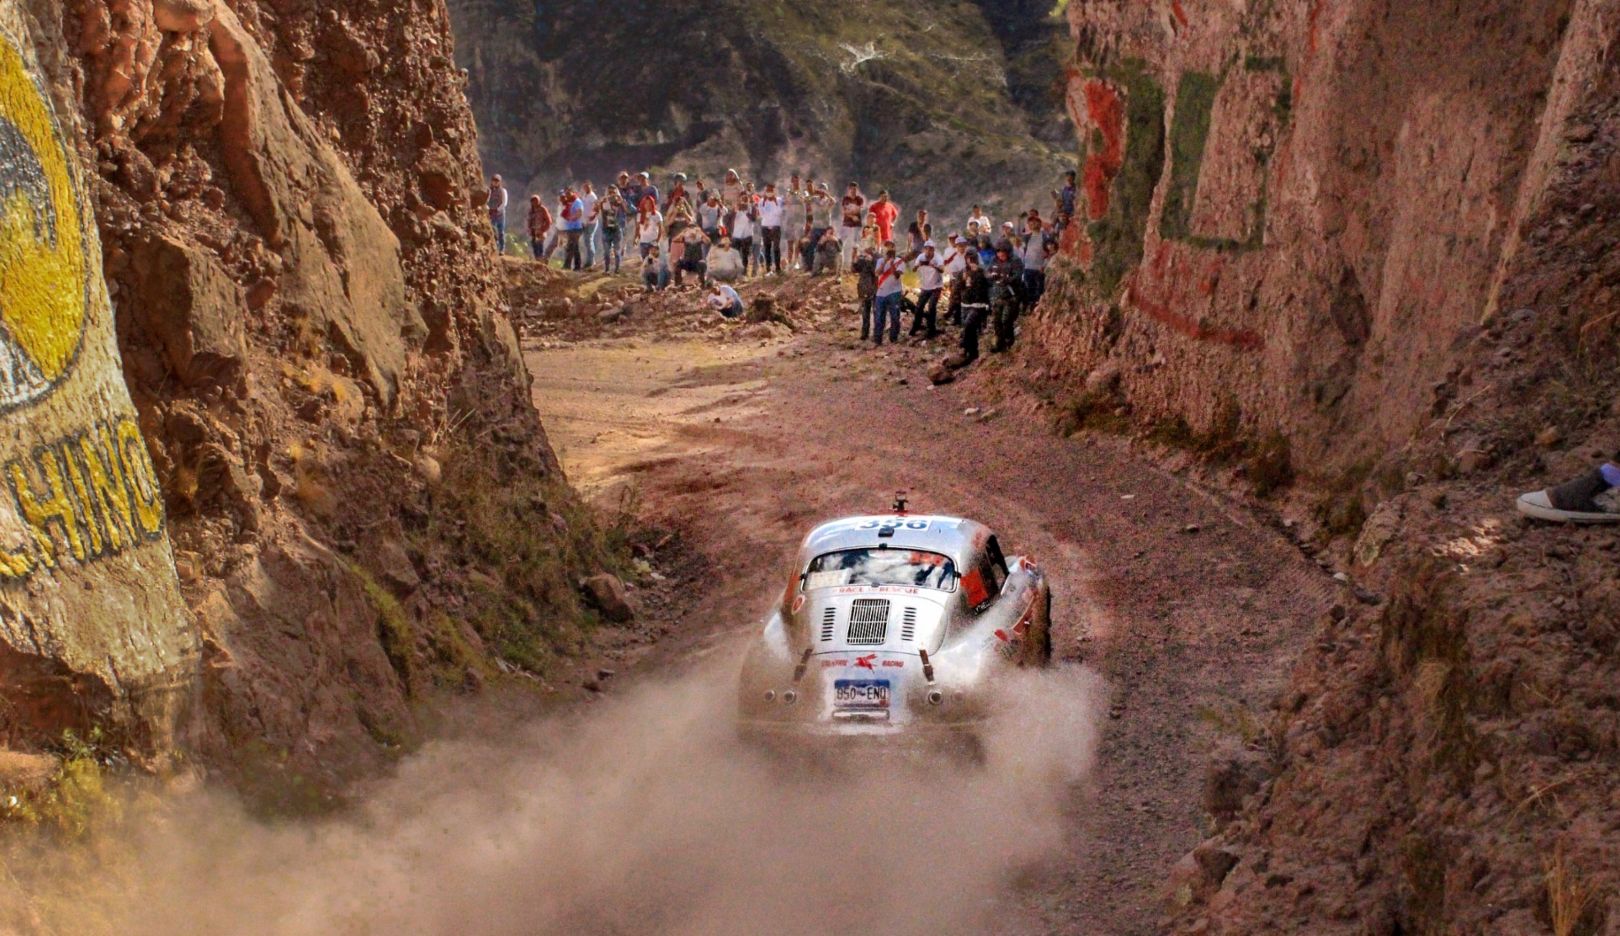 Die einzigartige Klassikrallye Caminos del Inca führt durch den Süden Perus. Mit Höhen von bis zu 5.000 Metern ist die Route auch physisch überaus herausfordernd. Die Schotterstraßen verlangen hohe Konzentration und ein zuverlässiges Fahrzeug.